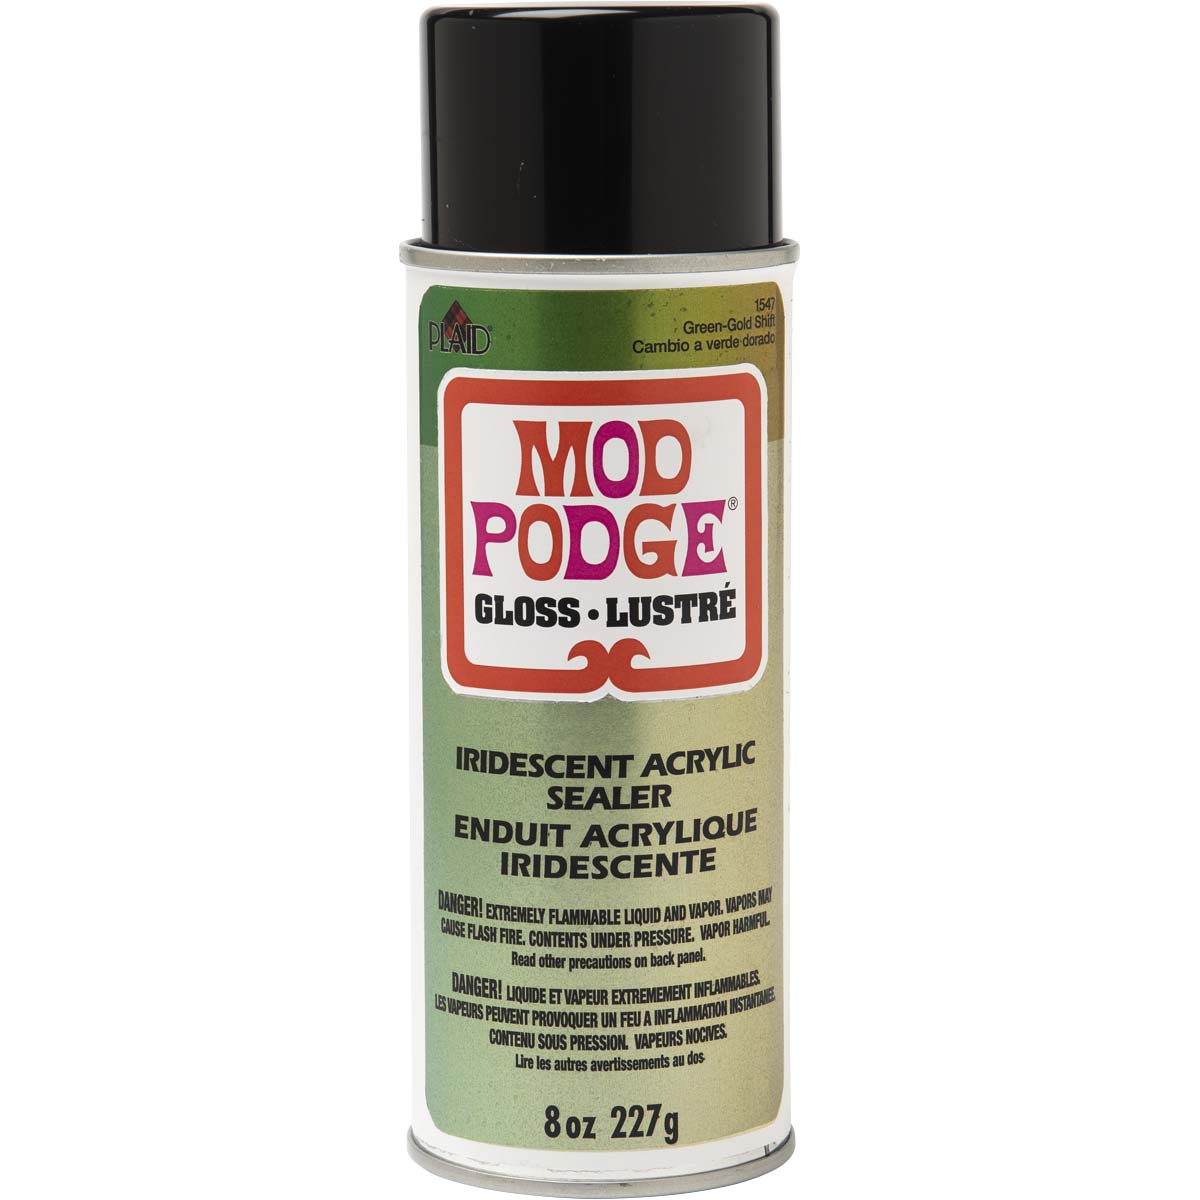 Mod Podge Spray Acrylic Sealer - Green to Gold